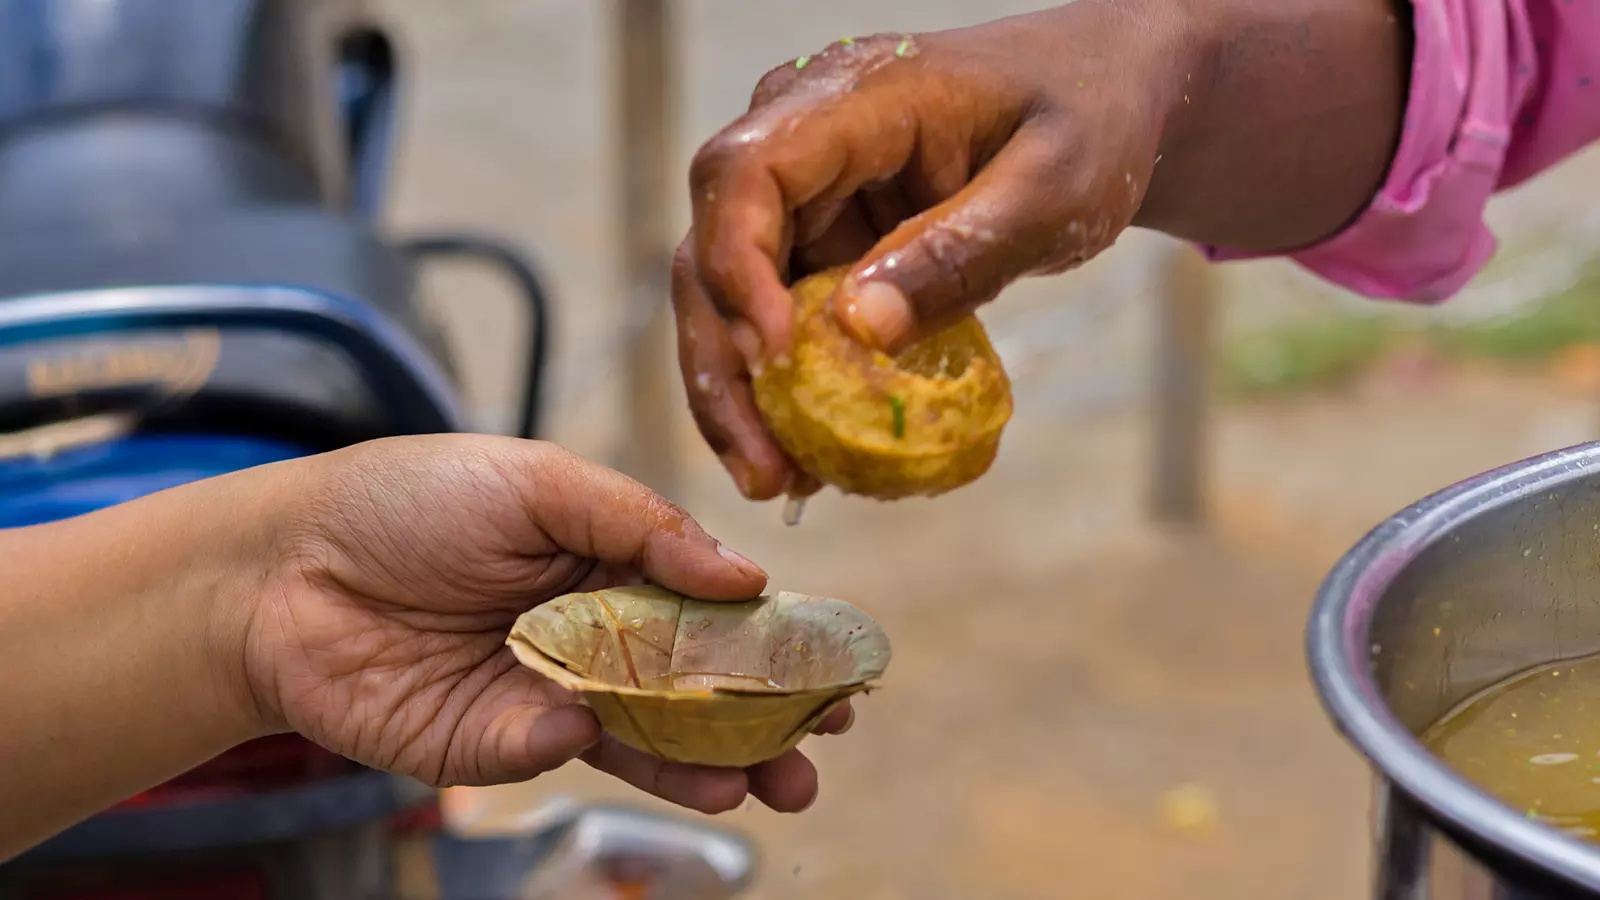 ಶೇ. 22ರಷ್ಟು ಪಾನಿಪುರಿಗಳಲ್ಲಿ ಕ್ಯಾನ್ಸರಿಗೆ ಕಾರಣವಾಗುವ ಕೃತಕ ಬಣ್ಣ